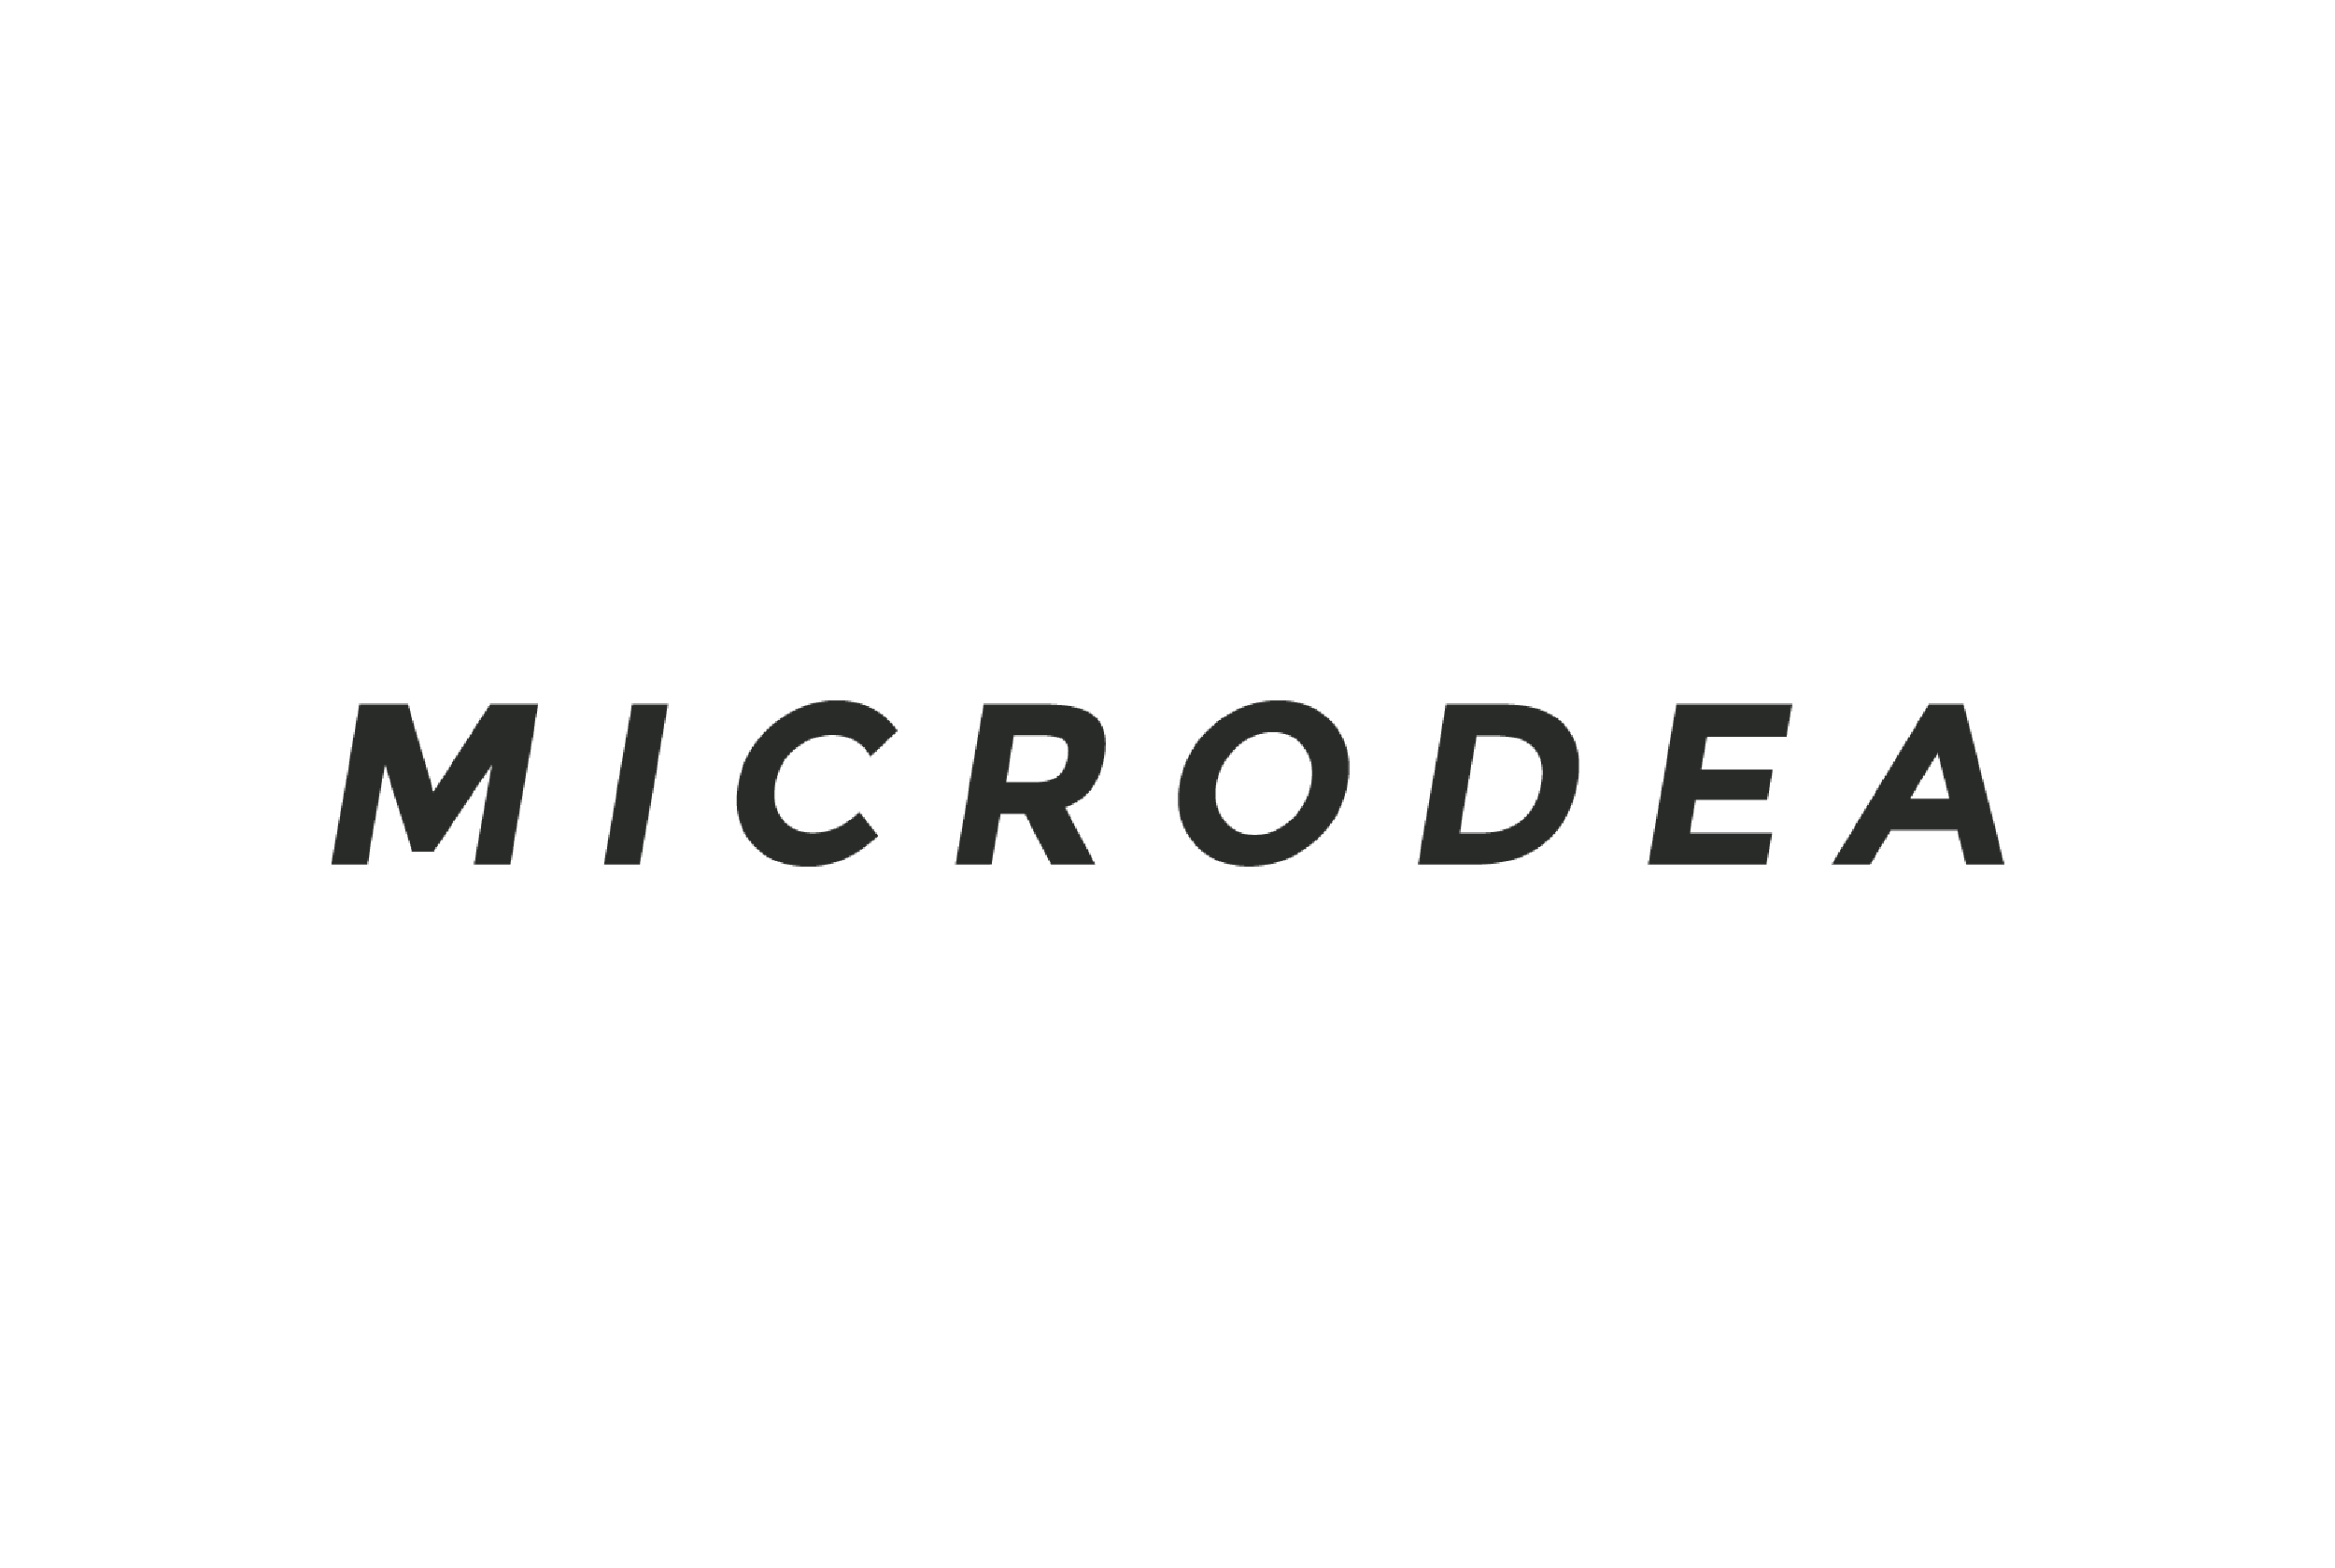 Microdea